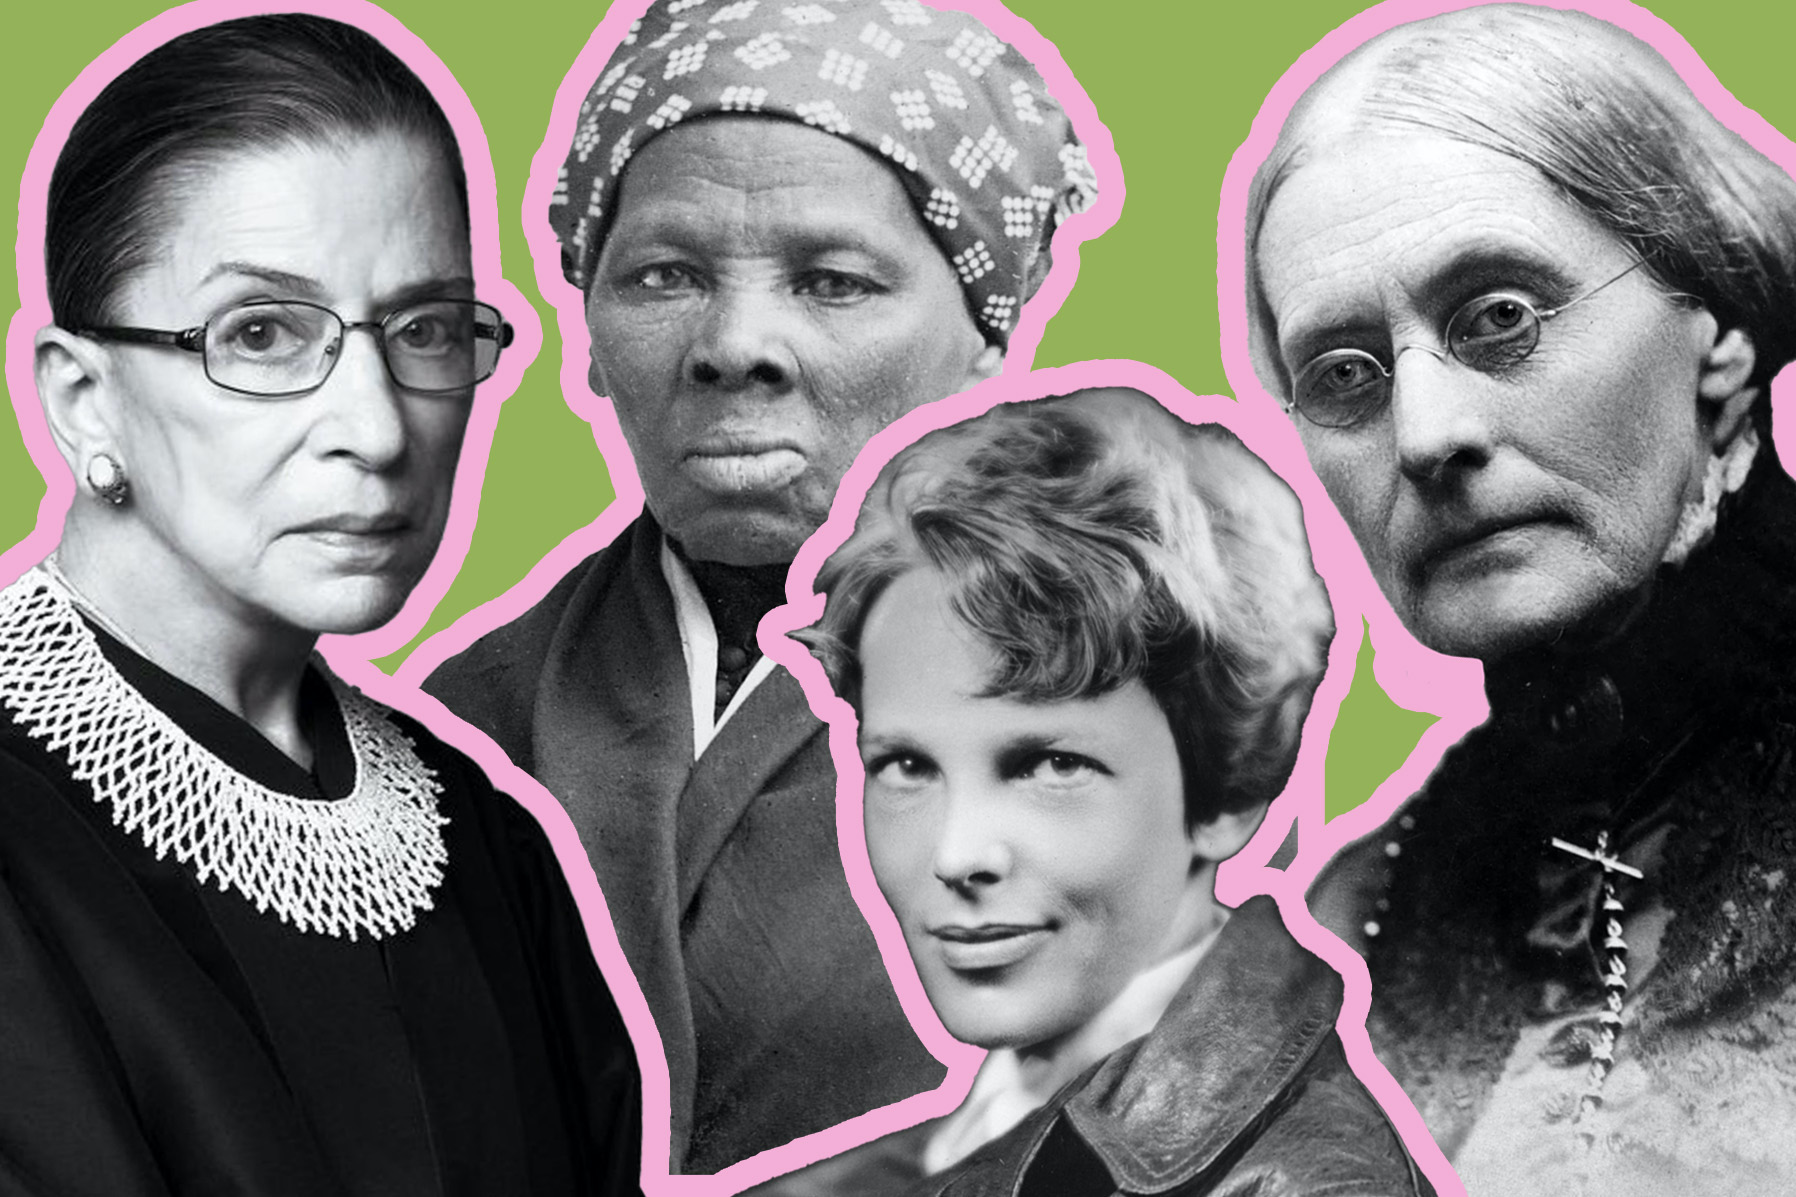 powerful black women in history